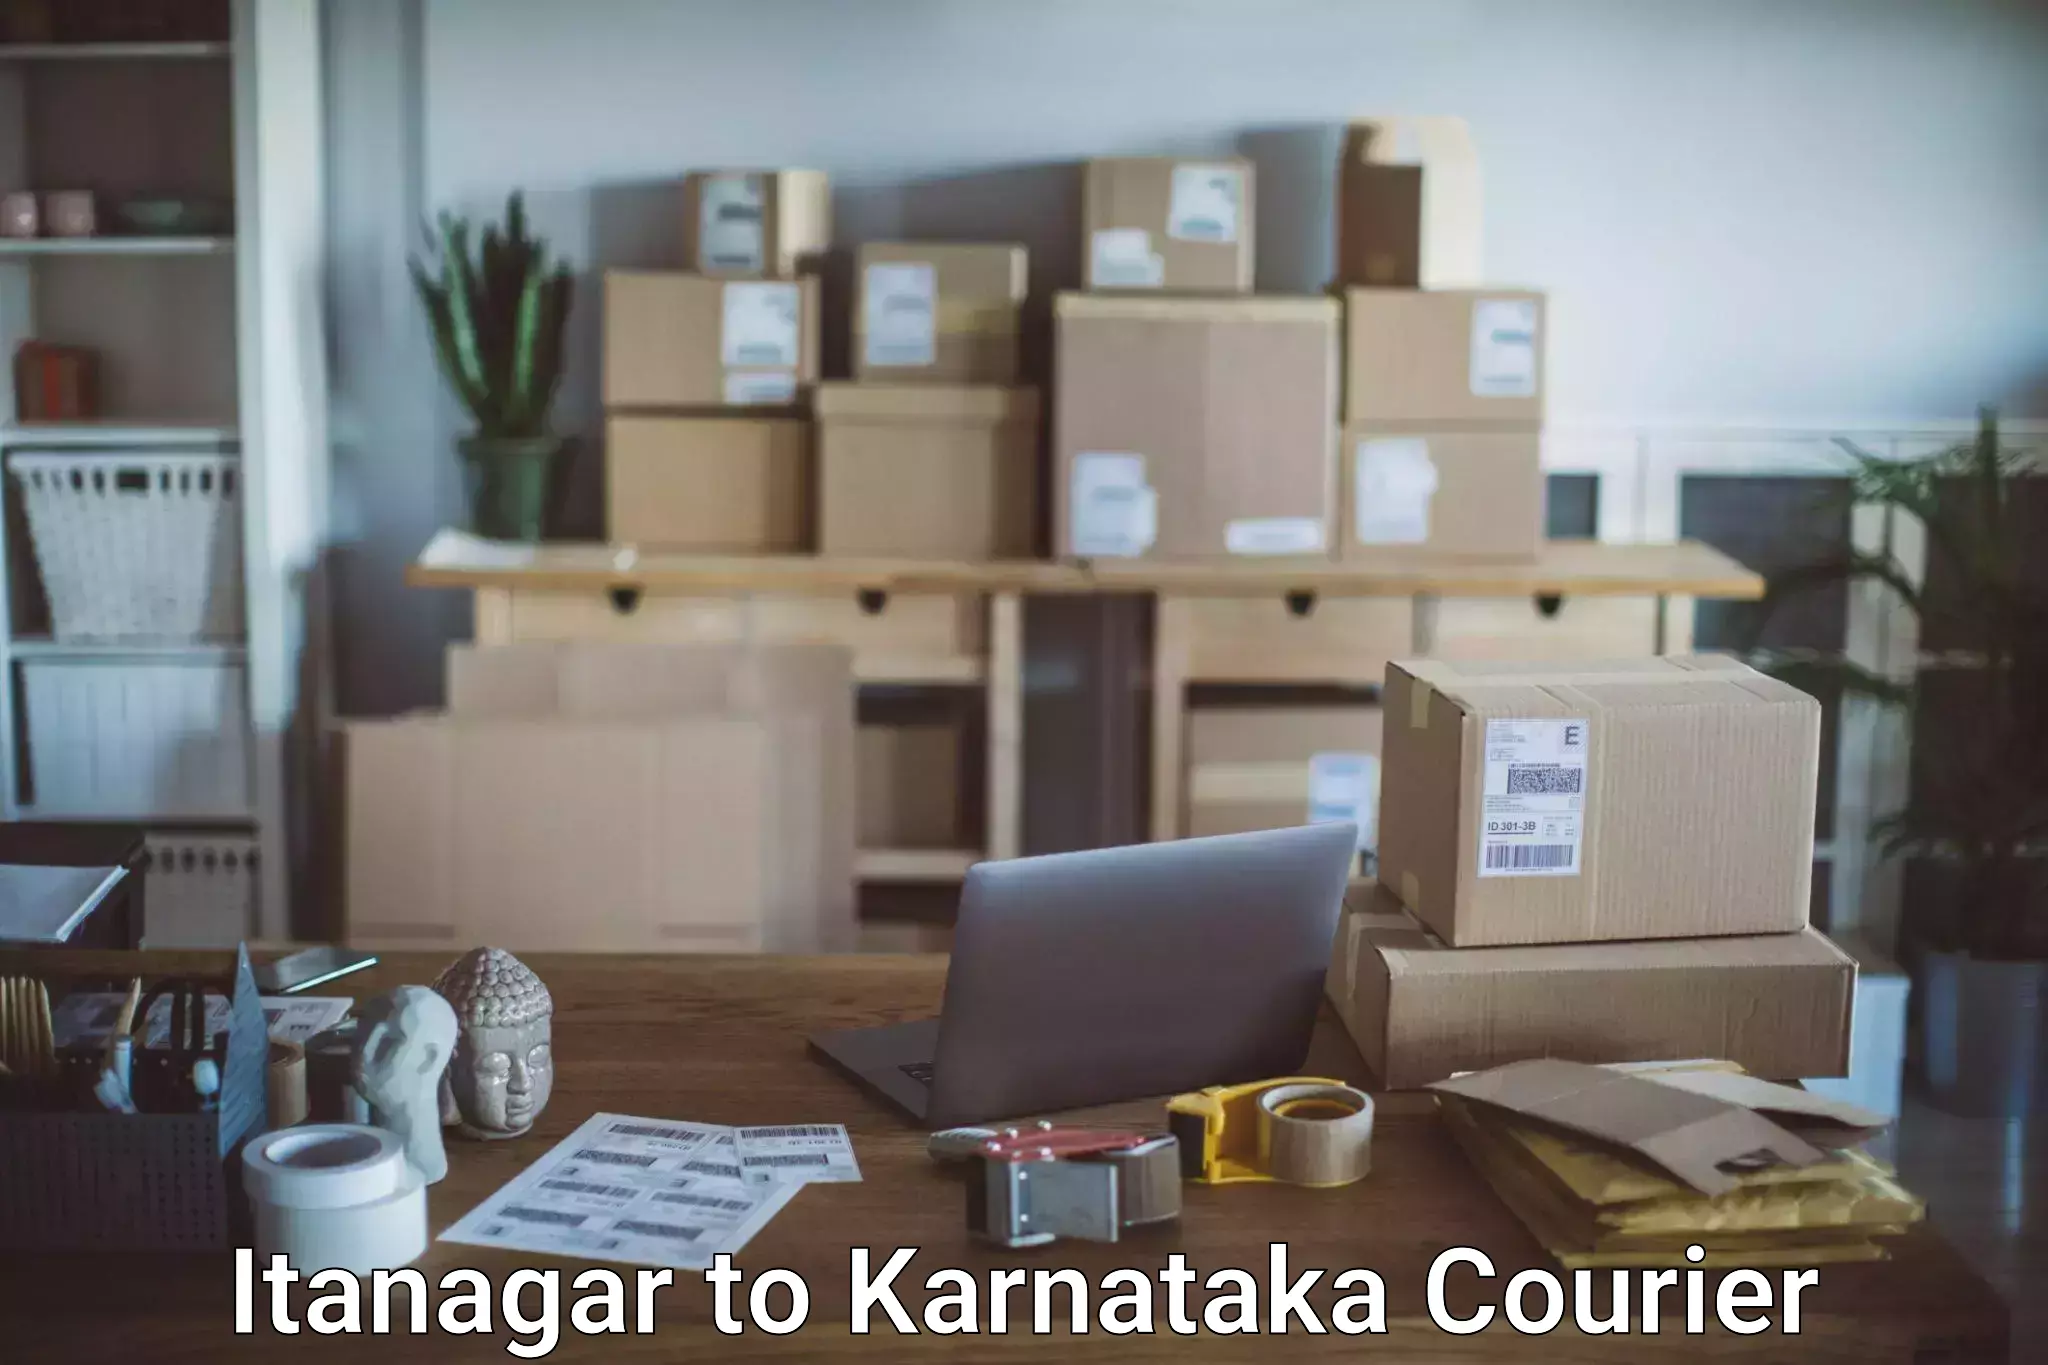 Baggage courier FAQs Itanagar to Kanjarakatte